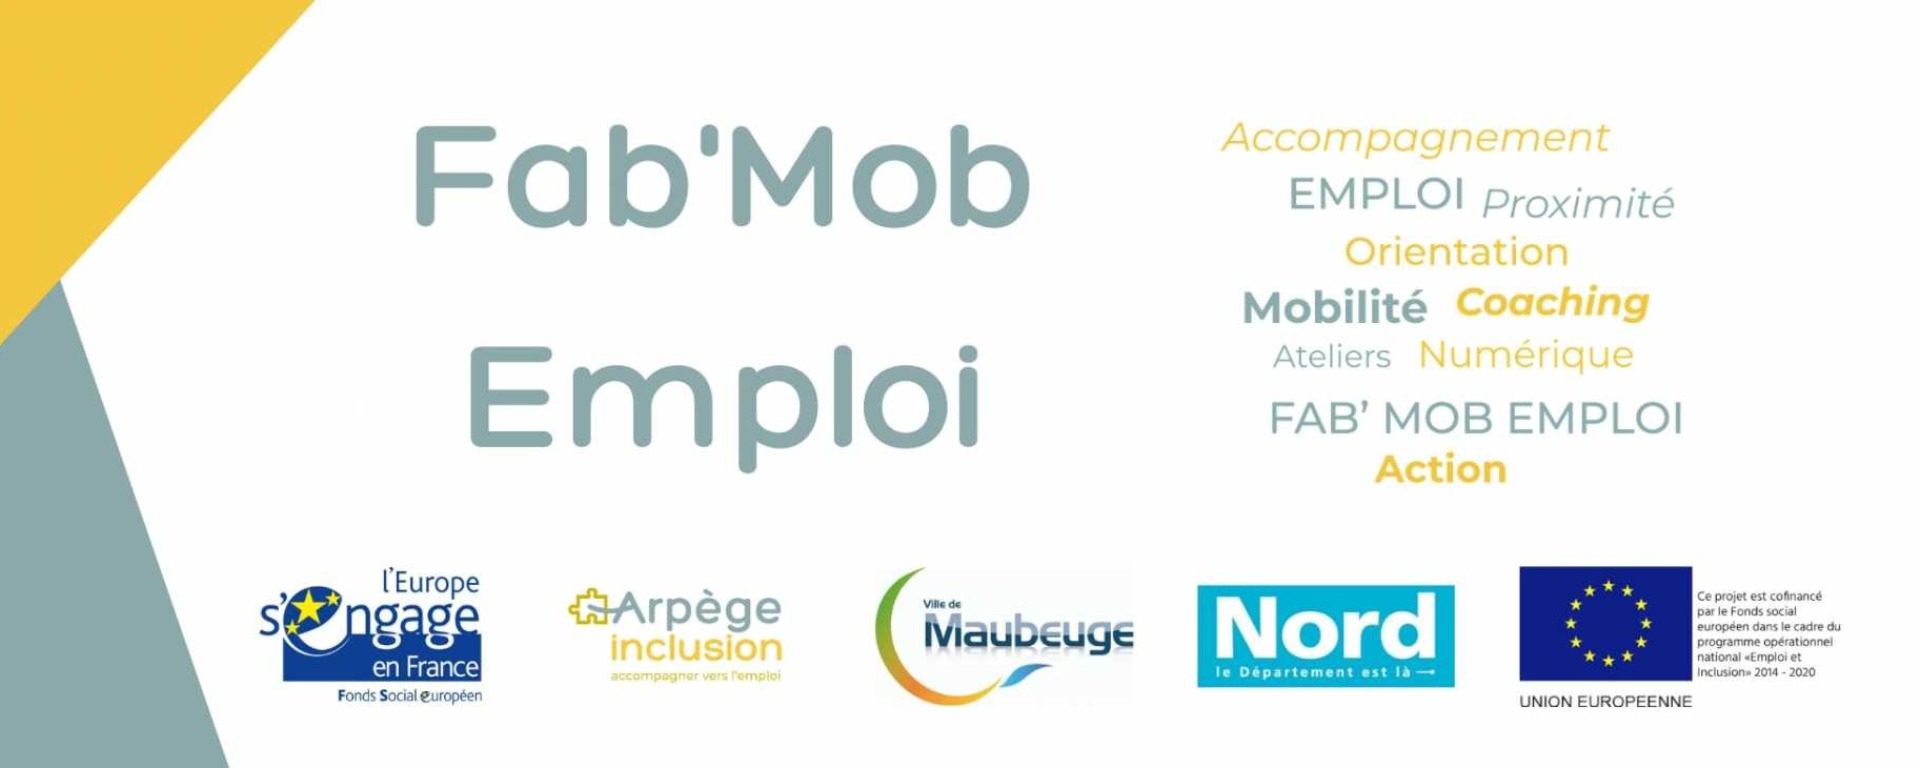 Les Fab'Mob Emploi sont des antennes d'accompagnement à l'emploi destinées à accompagner les particuliers dans leur recherche d'emploi, les initier aux outils numériques et leur permettre d'optimiser leur inclusion professionnelle.